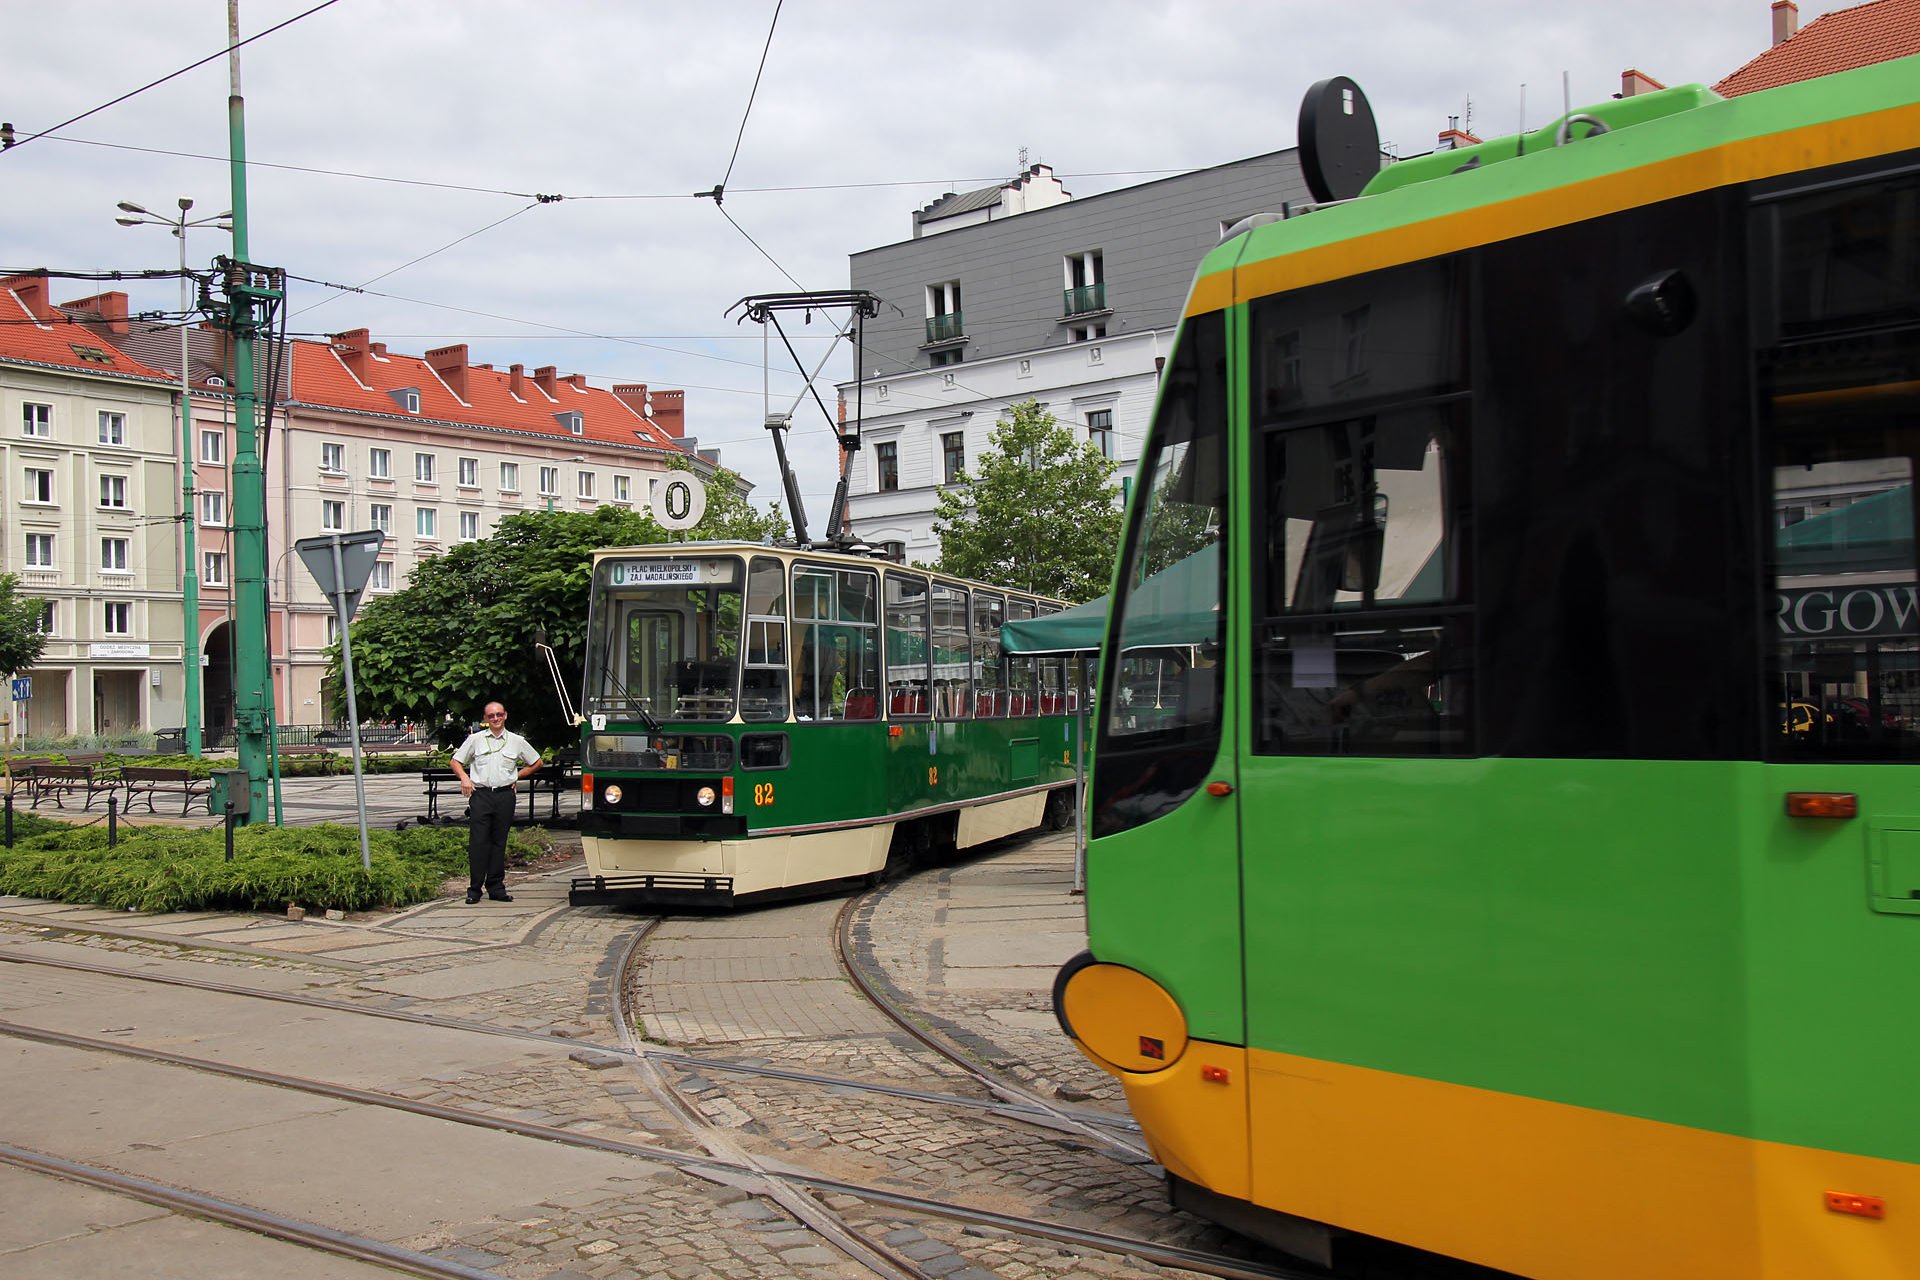 Beta 417 Der Urvater mit der zeitgemäßen Straßenbahn. The granddaddy with the modern tram...